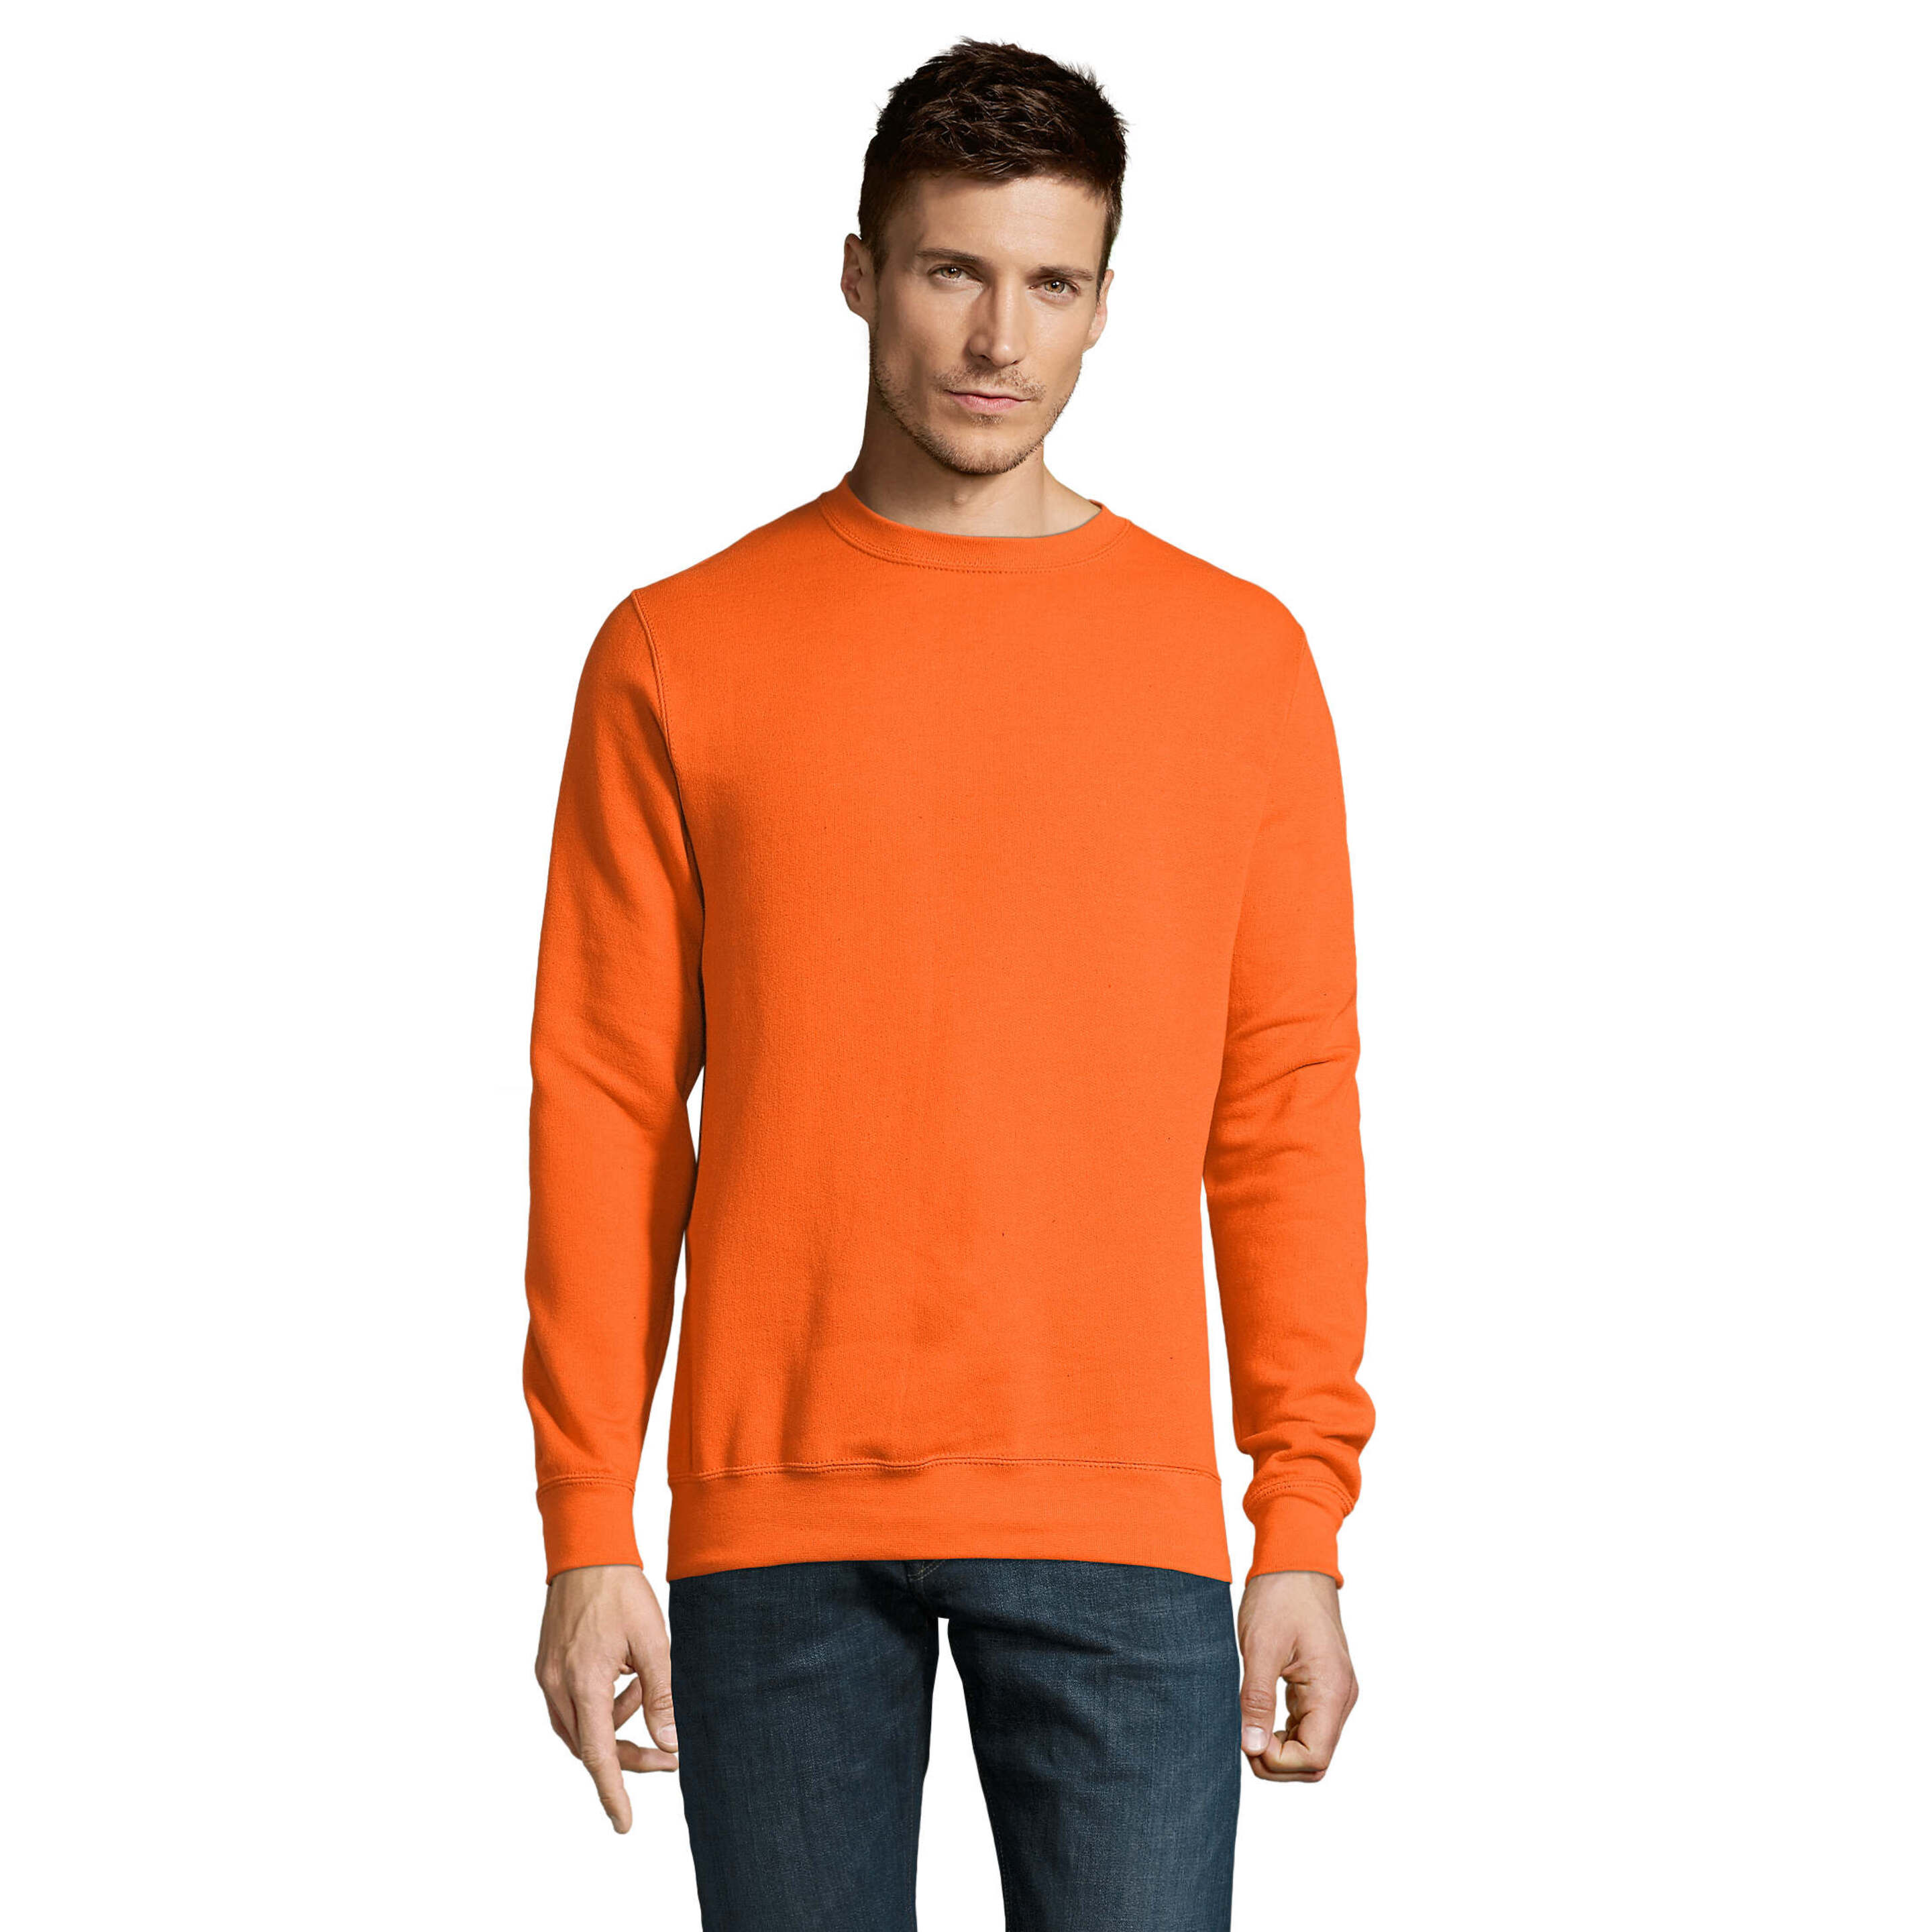 Sols New Pro Supreme Man Camiseta De Velo Básica Sweatshirt Man Básica